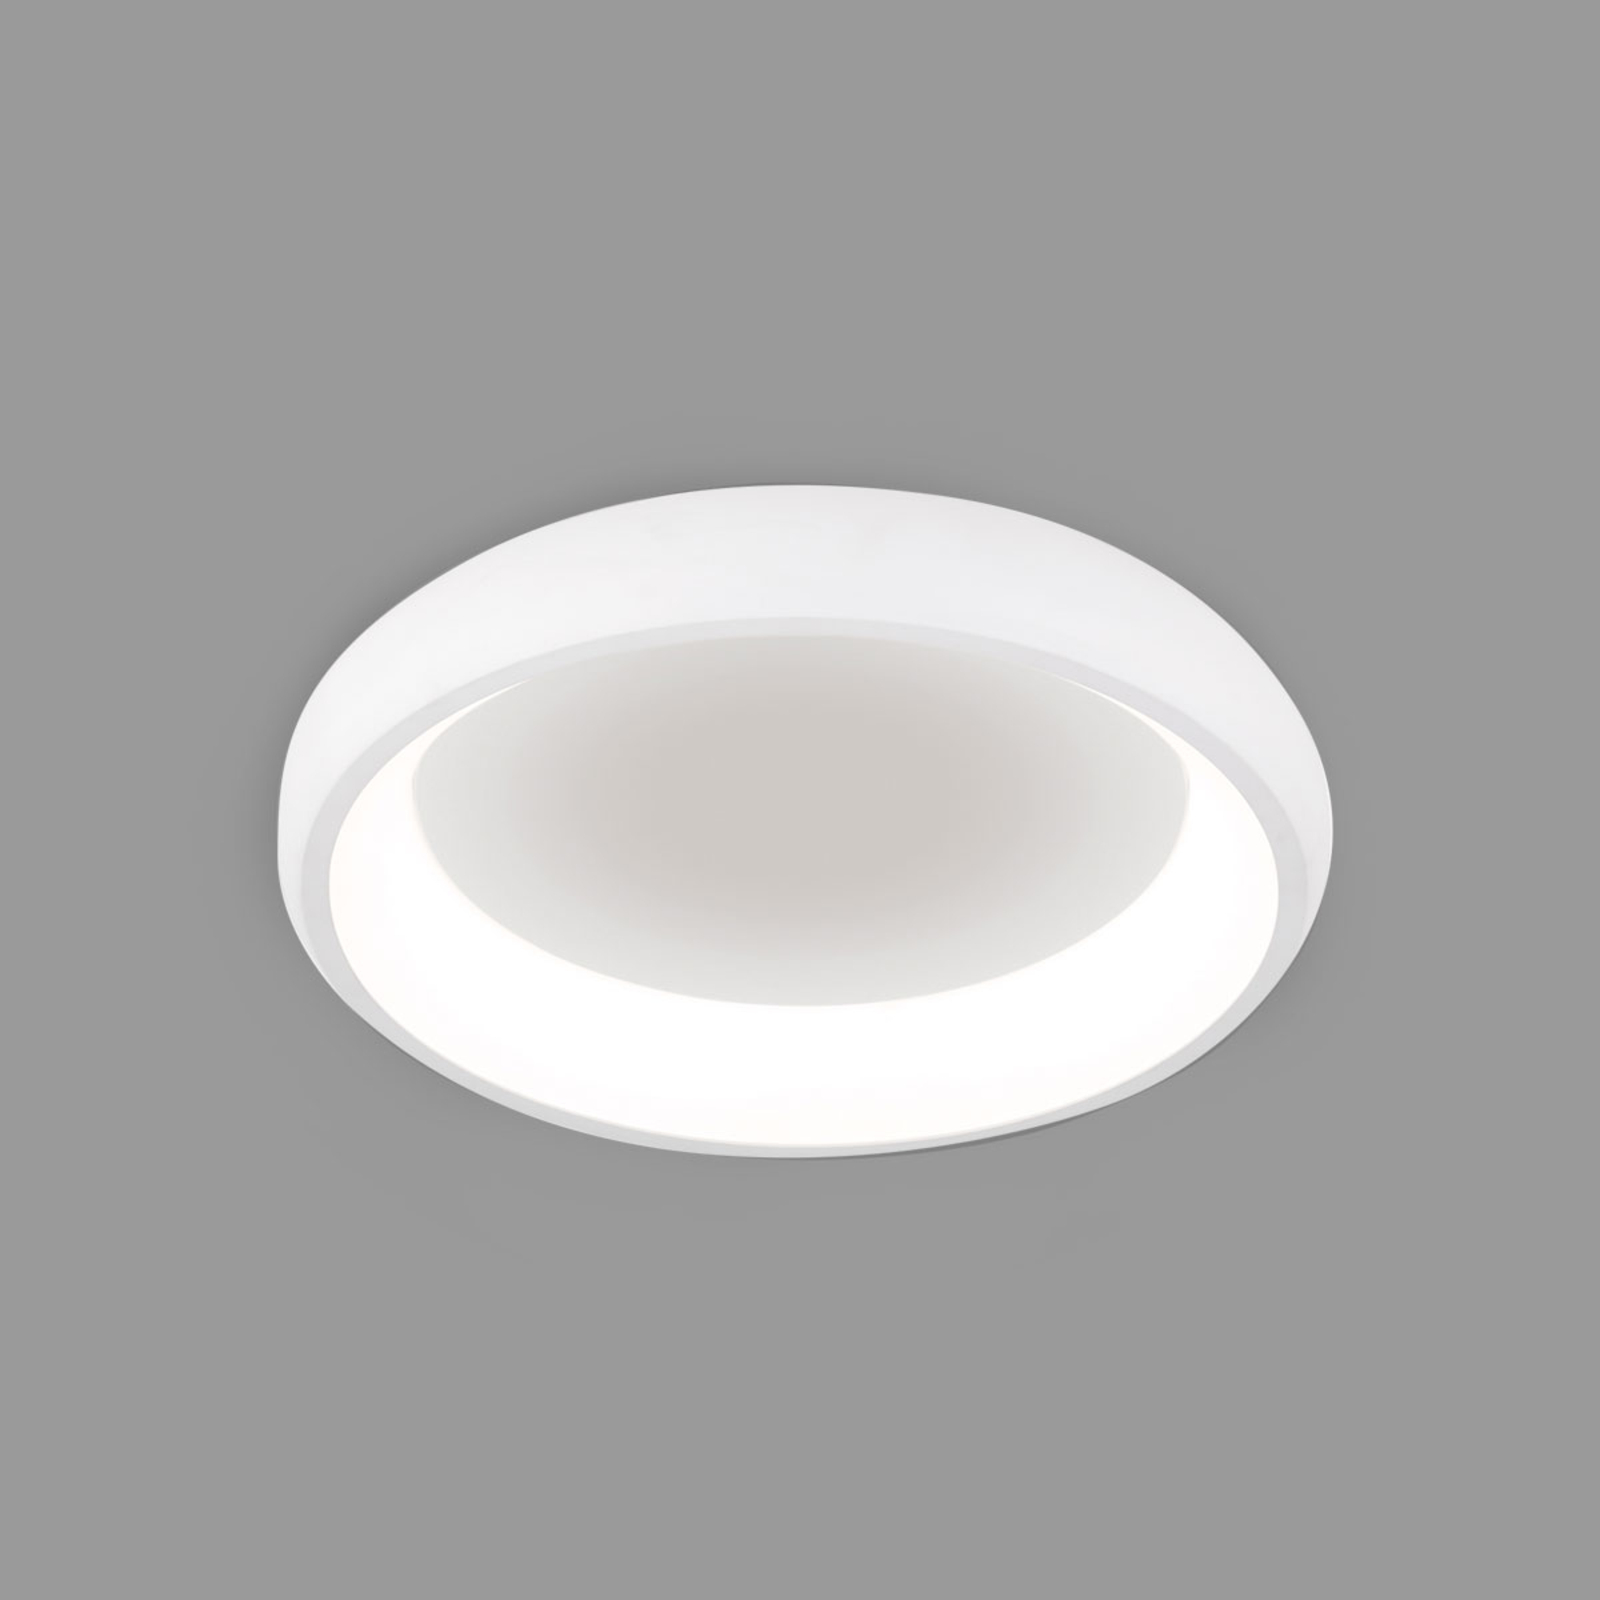 LED-kattovalaisin Venur, valoaukko sisällä, 41 cm